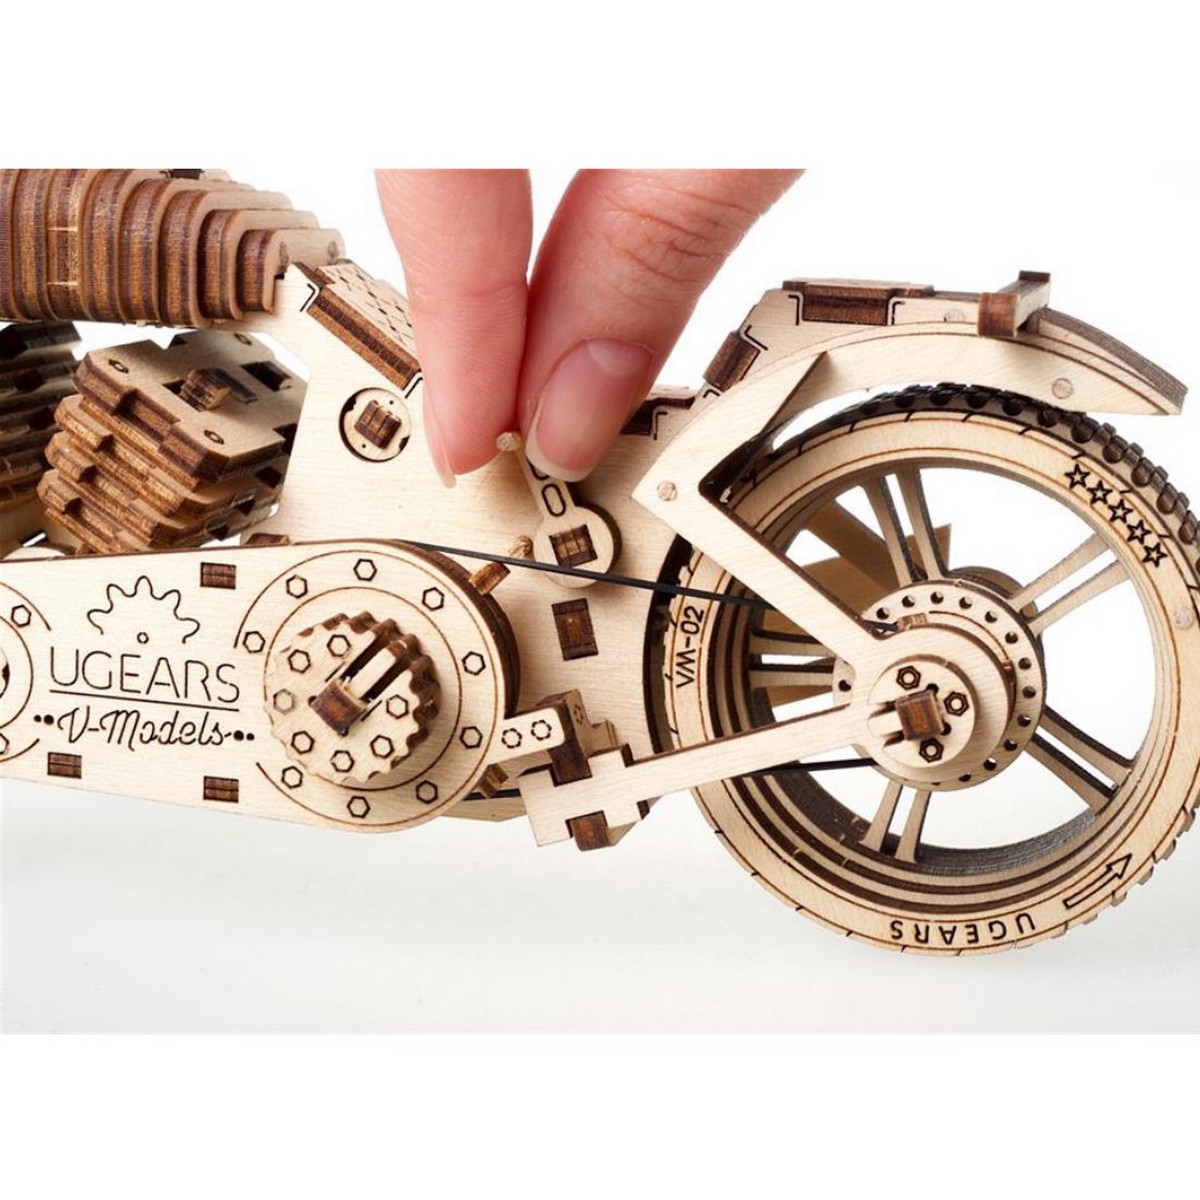 UGEARS maquette en bois pour adulte moto. une idee cadeau chez ugo et lea   (3)